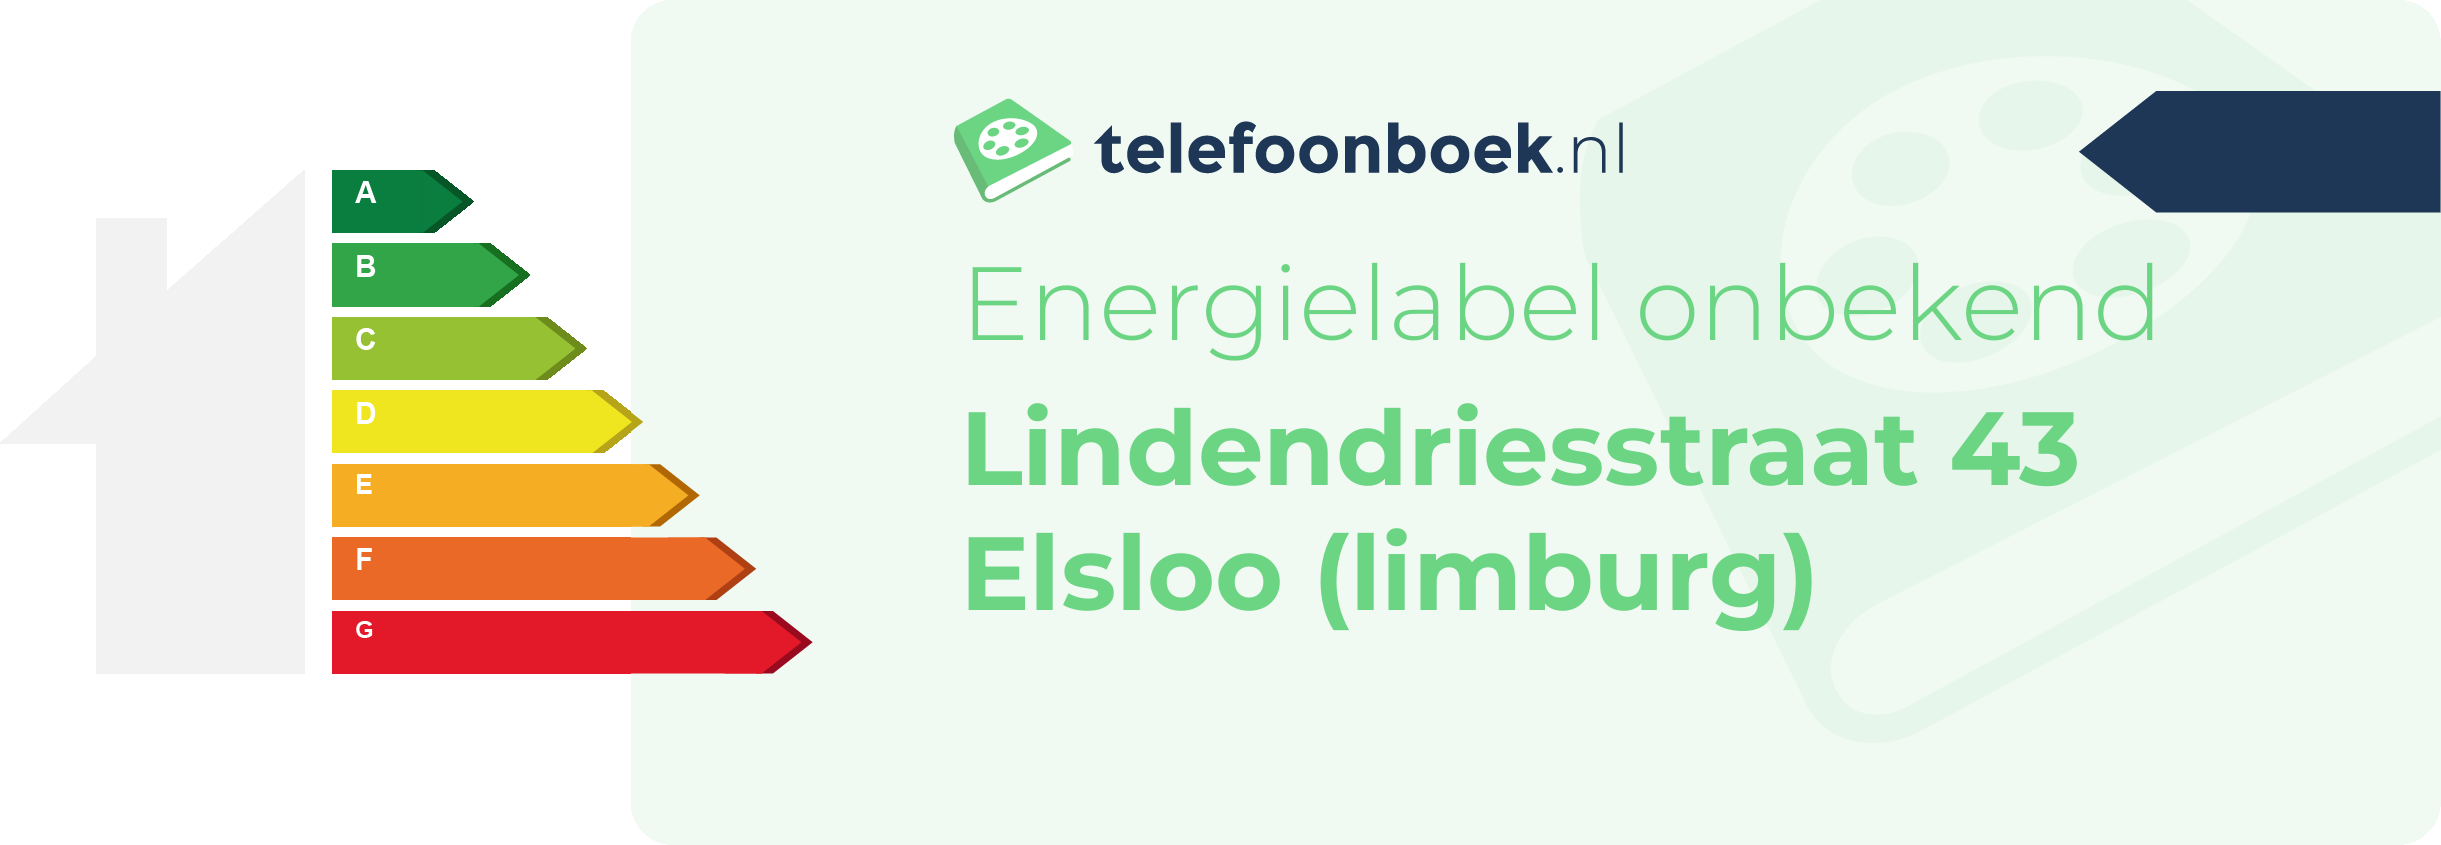 Energielabel Lindendriesstraat 43 Elsloo (Limburg)